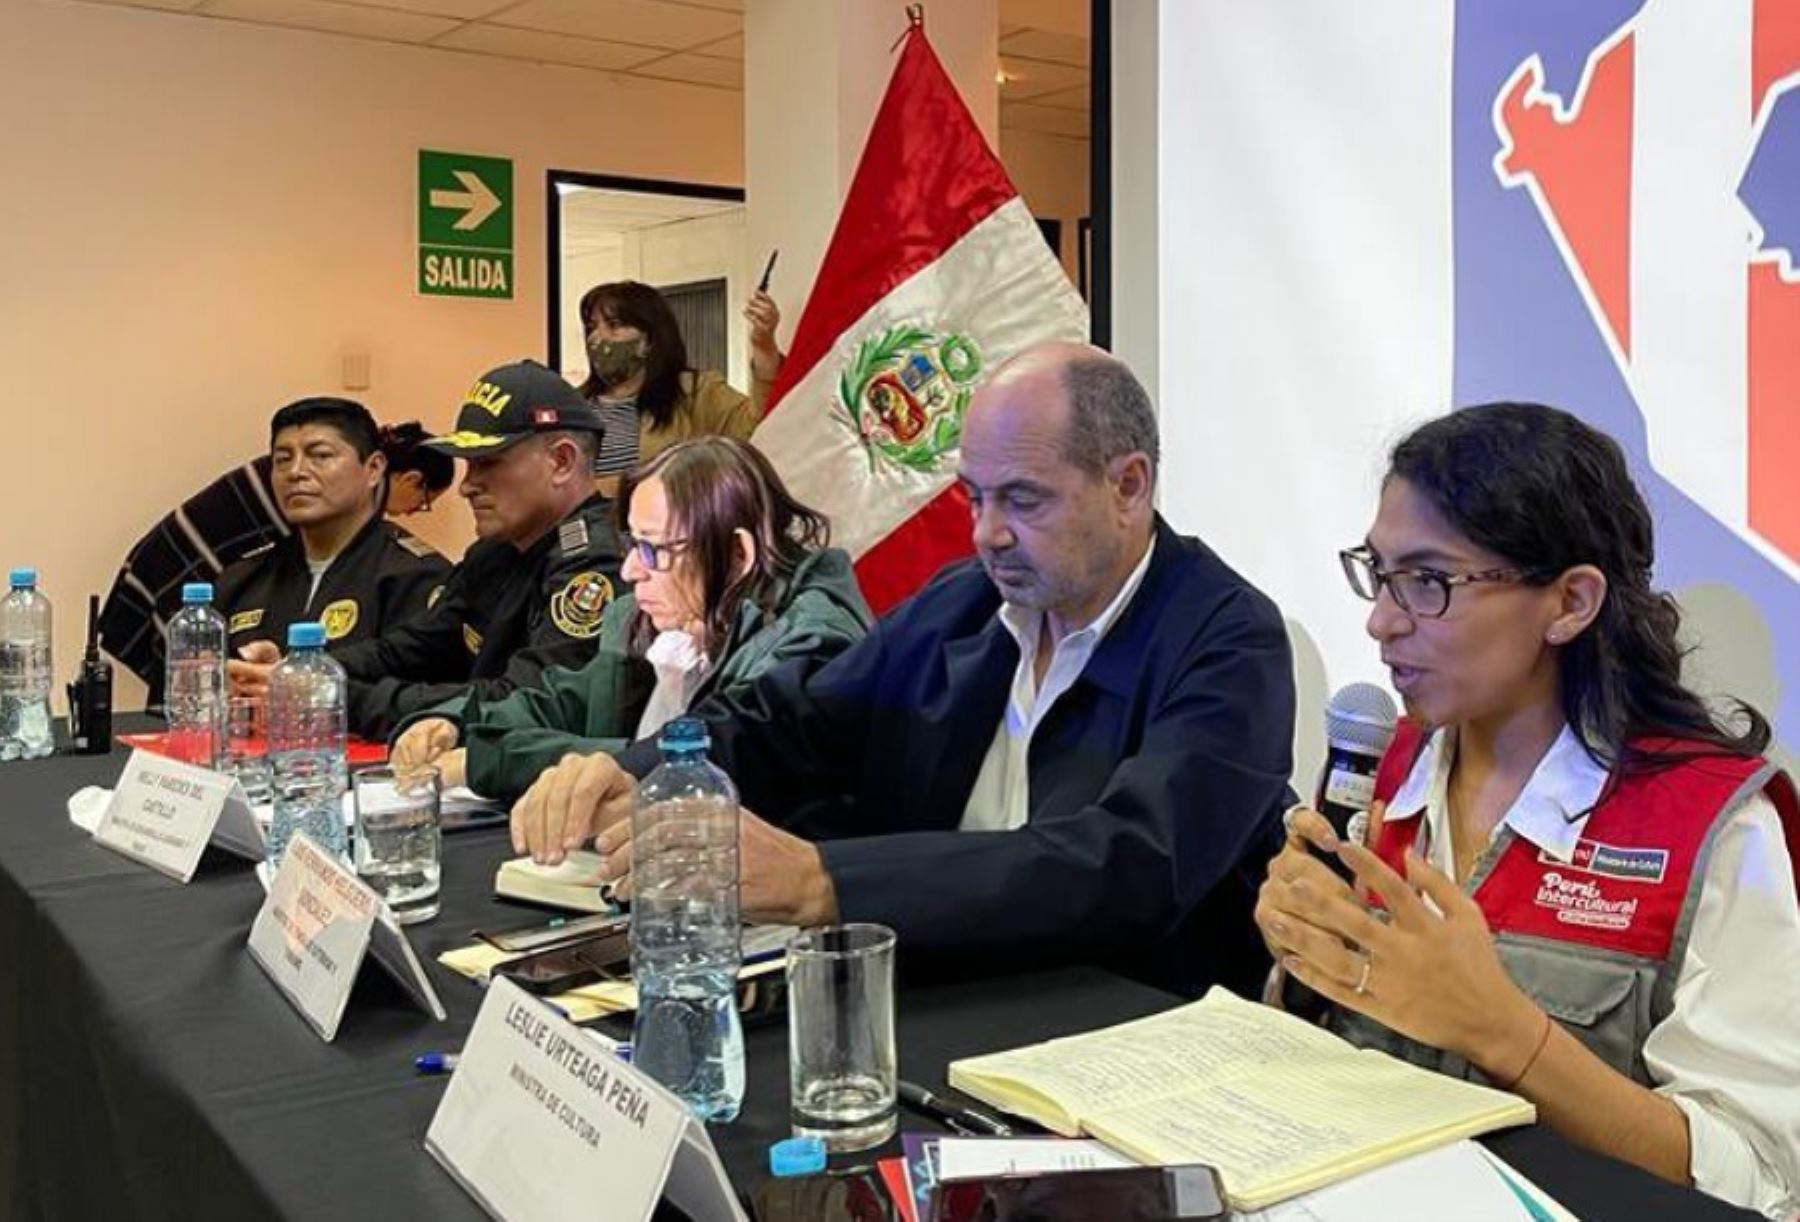 La ministra de Cultura, Leslie Urteaga Peña, participó en la reunión de trabajo con diversos representantes de gremios del sector turismo del Cusco con el objetivo de escuchar propuestas para definir y articular acciones que contribuyan a la reactivación económica regional.